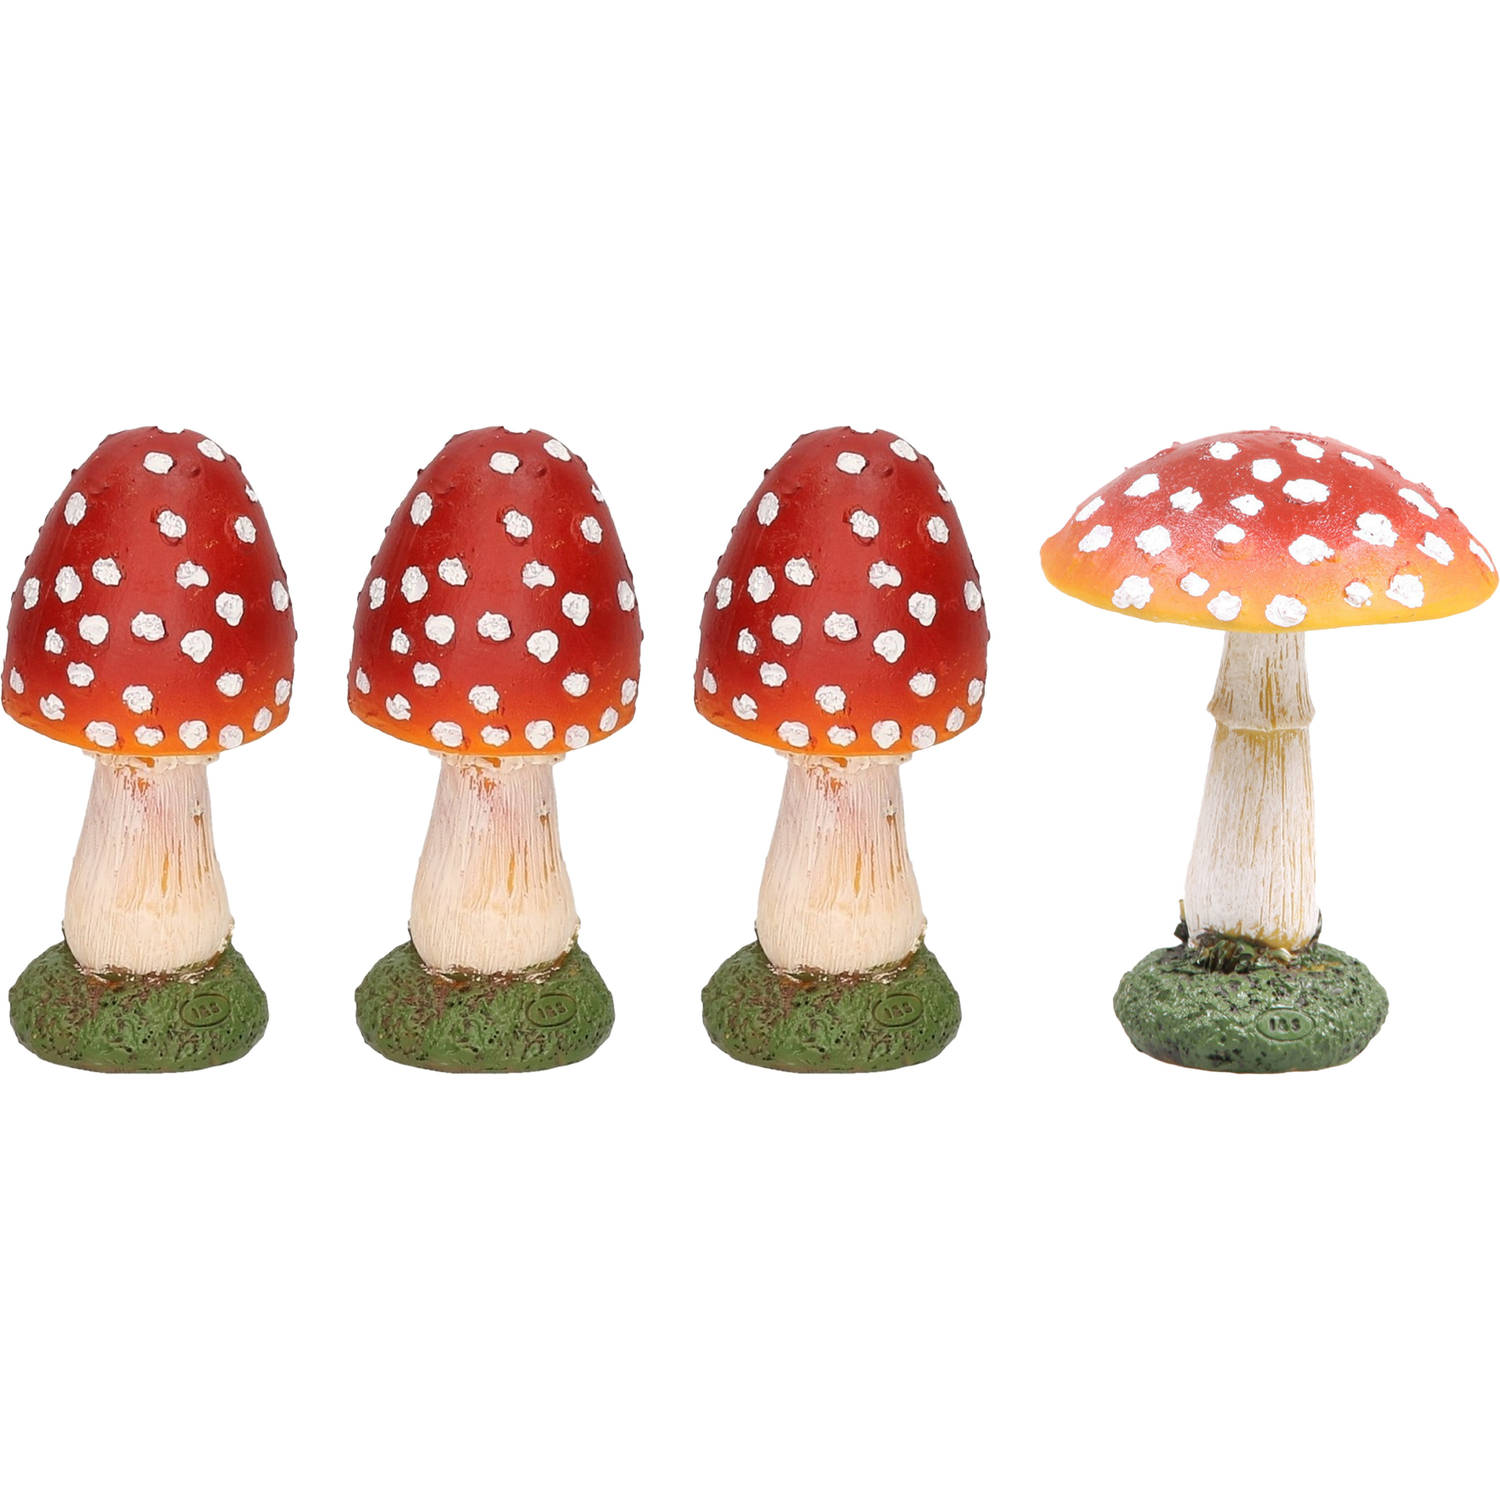 Decoratie paddenstoelen setje met 4x vliegenzwam paddenstoelen herfst thema Tuinbeelden